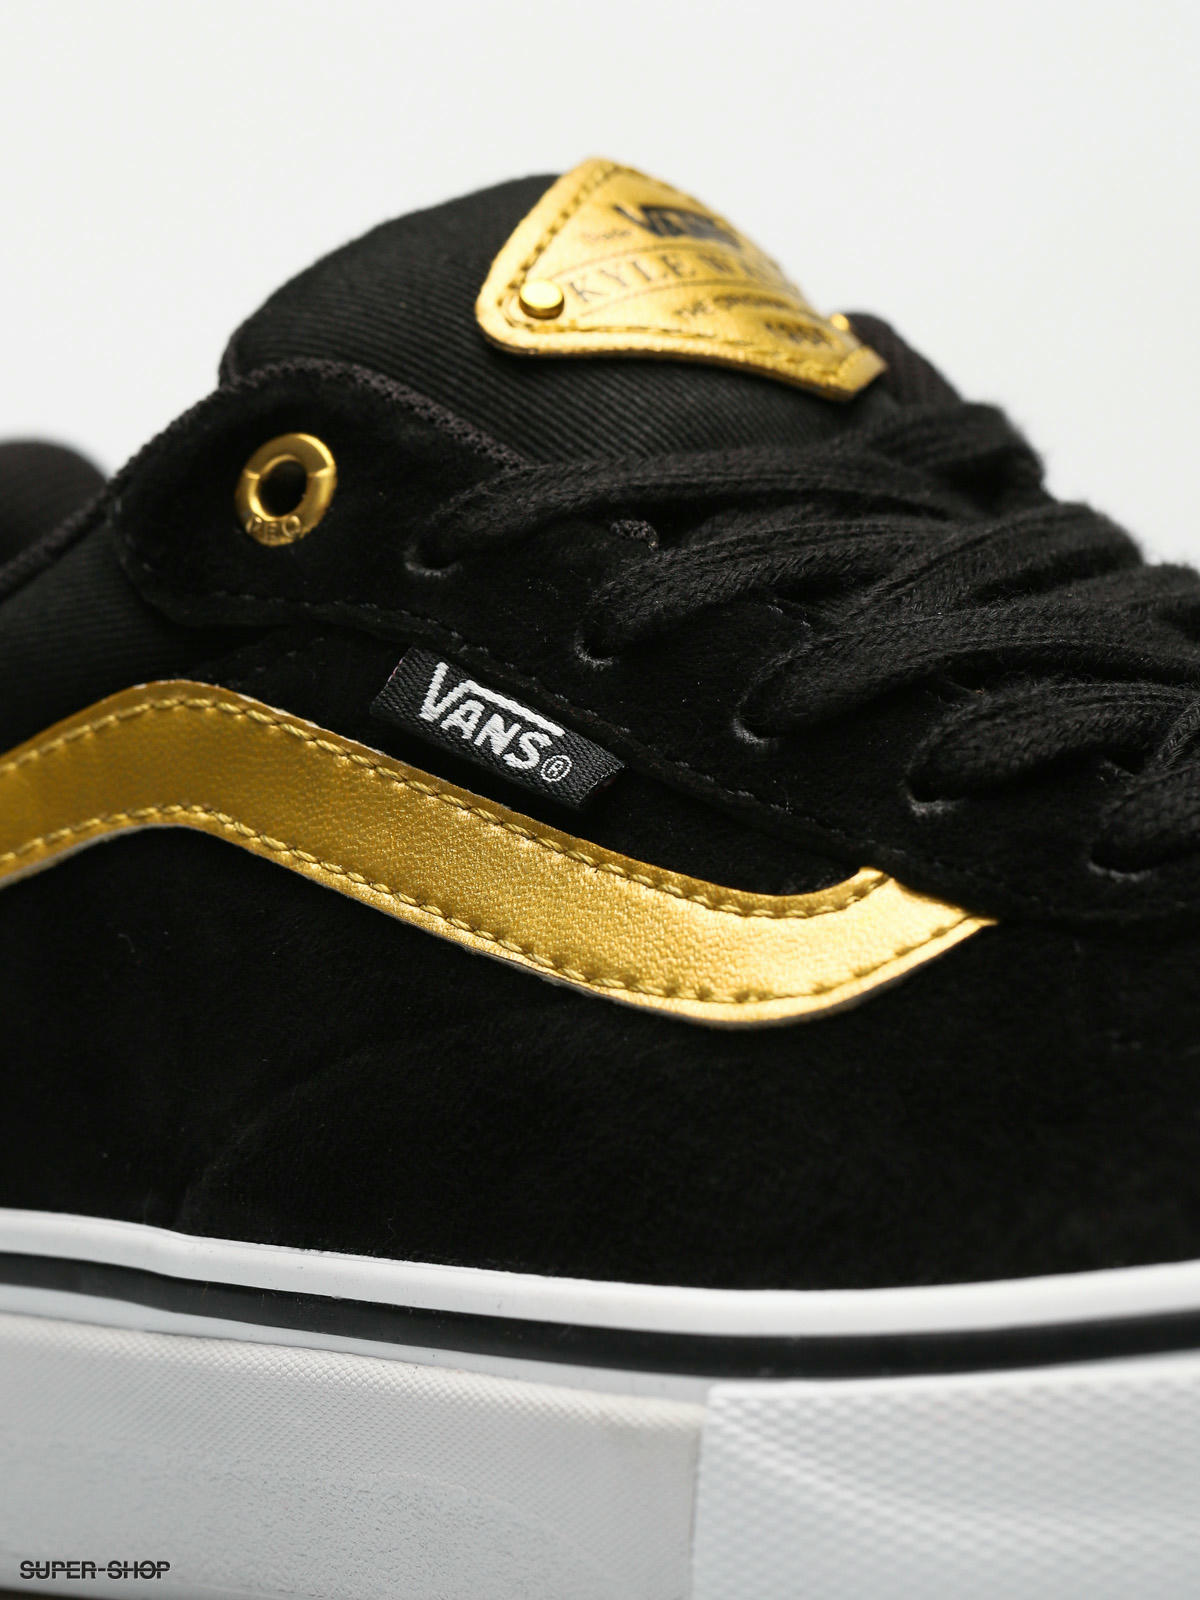 vans kyle walker pro black & metallic gold skate shoes